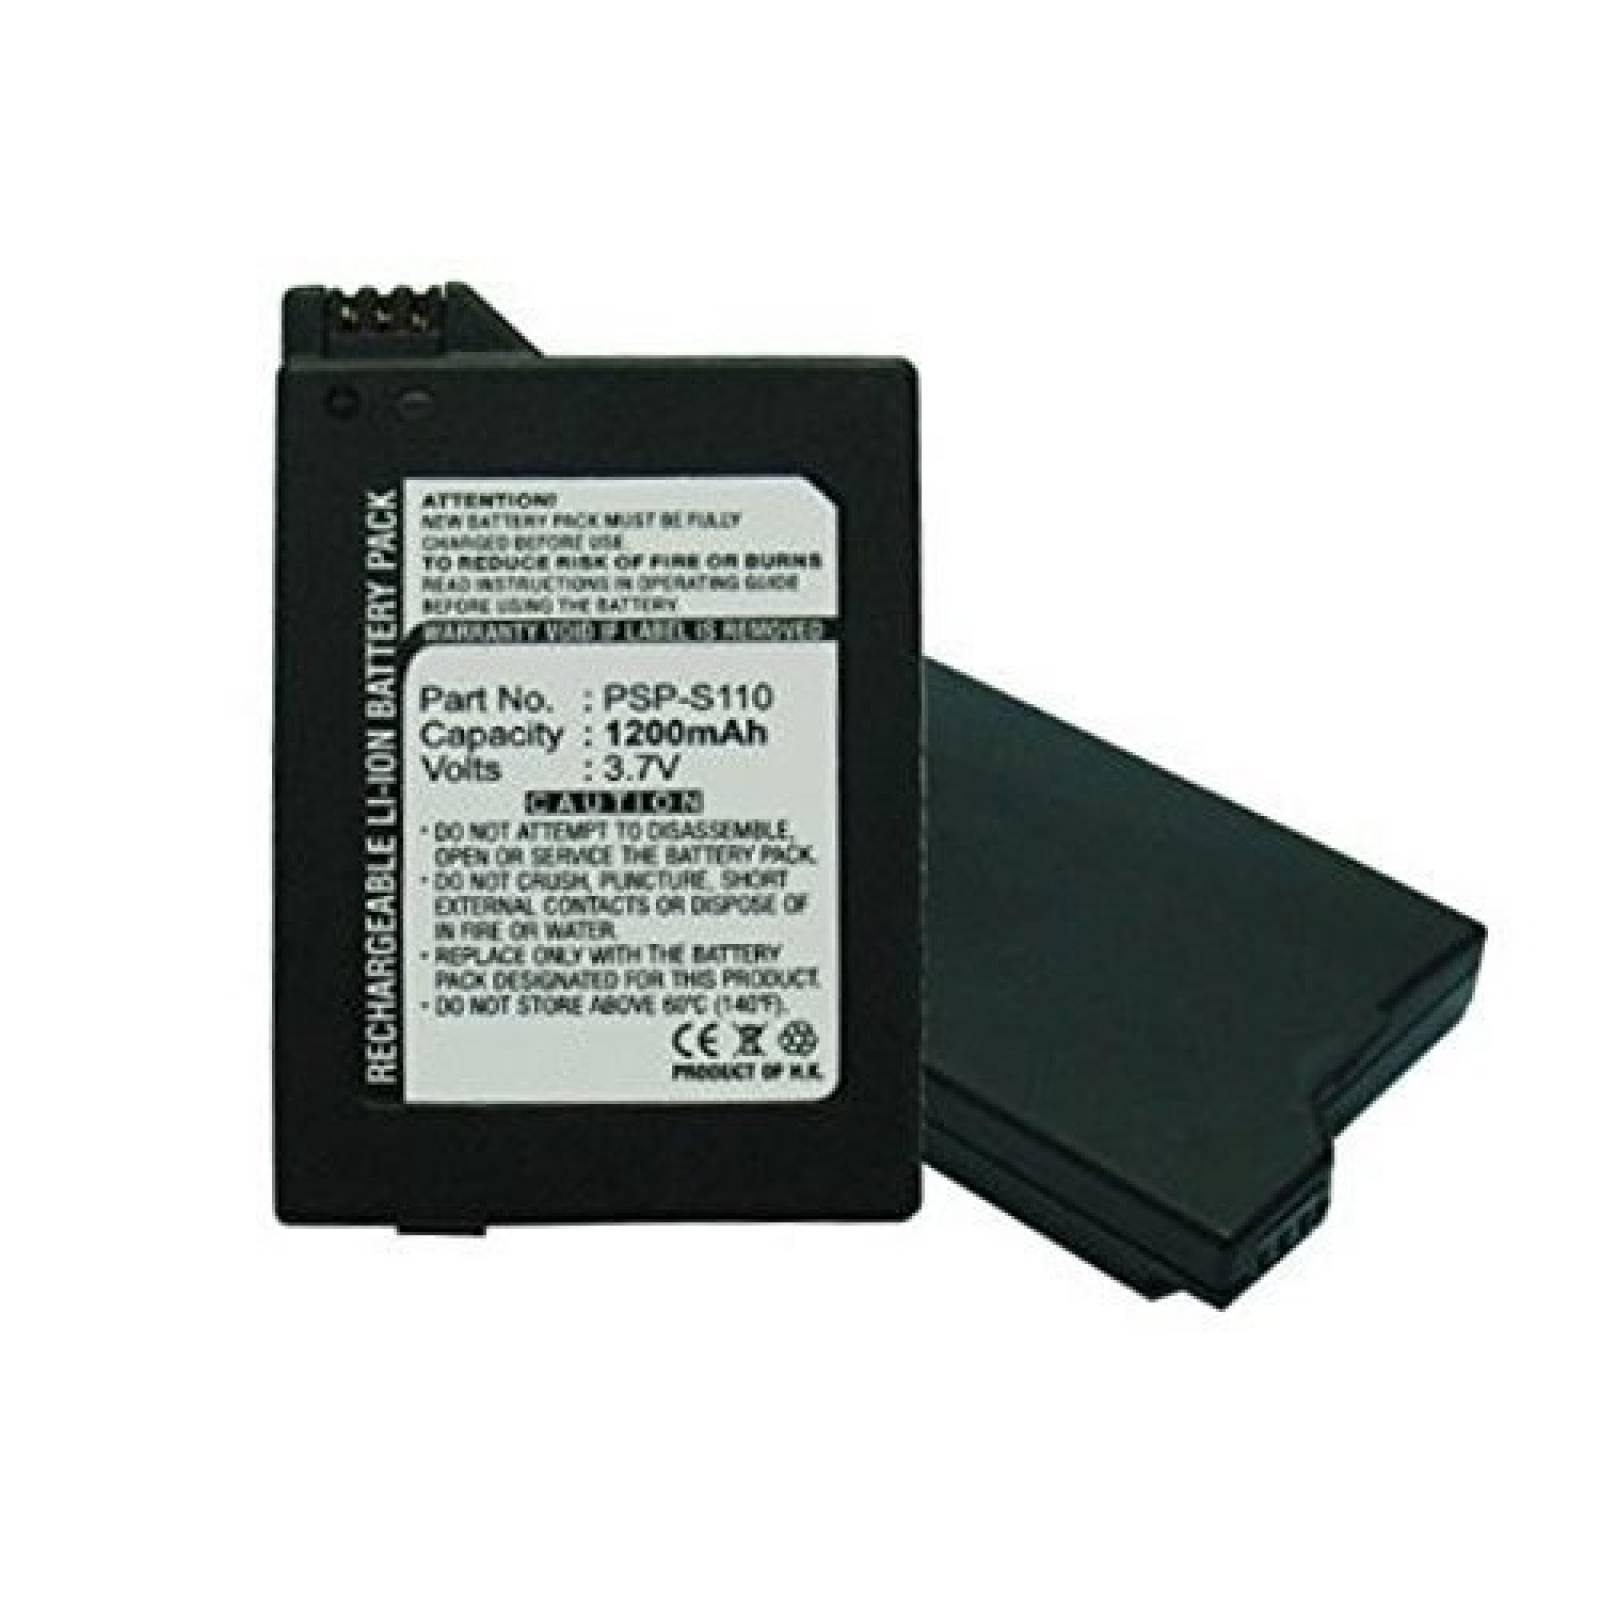 Batería MPF Products PSP-S110 de Repuesto para Sony PSP